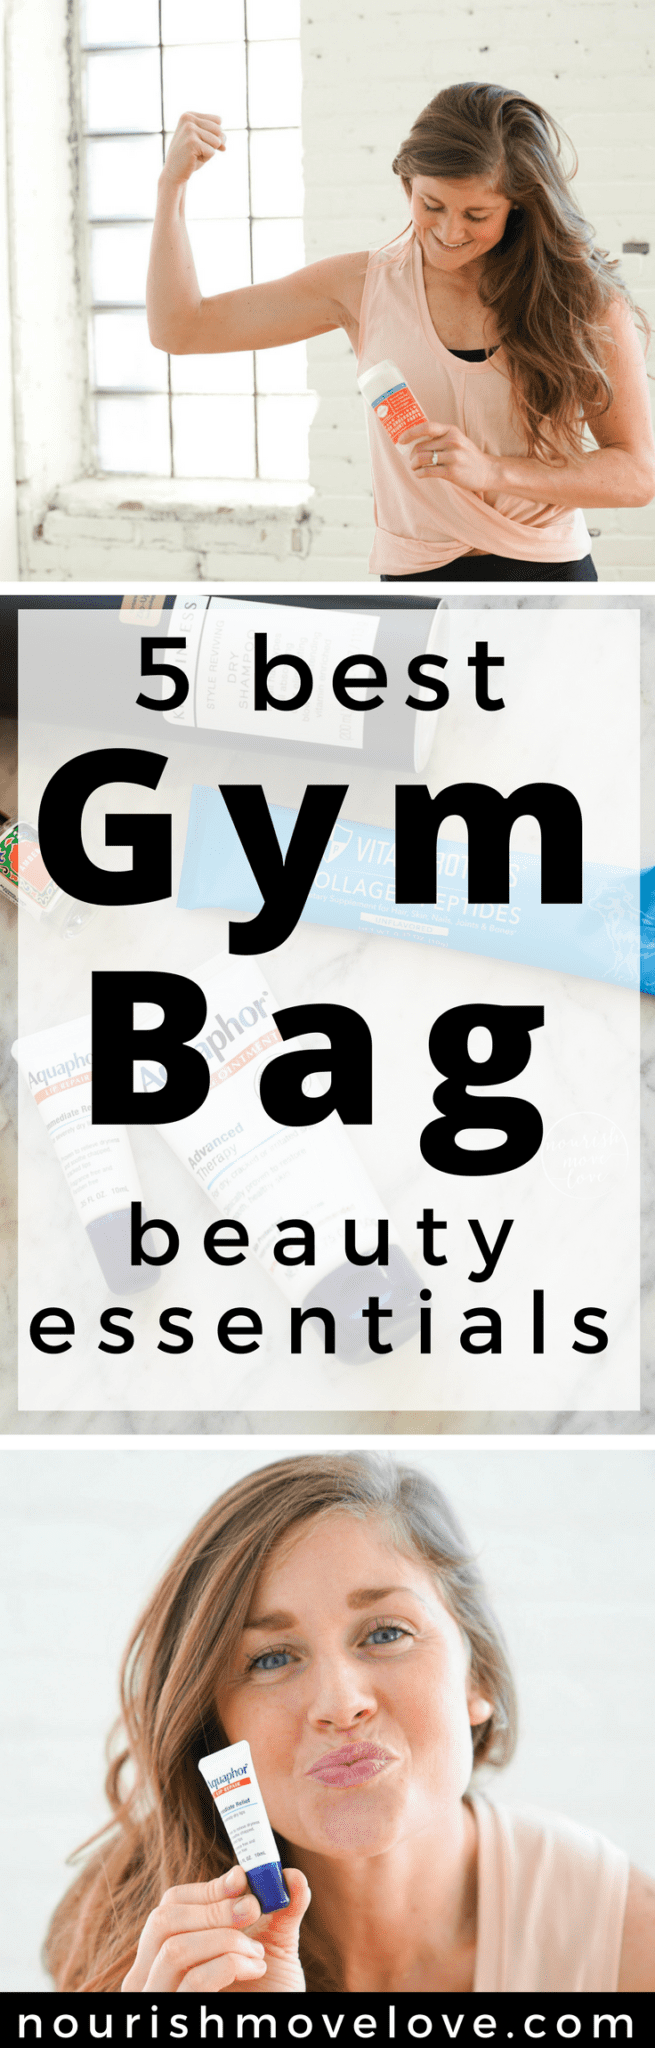 5 Gym Bag Beauty Essentials | www.nourishmovelove.com